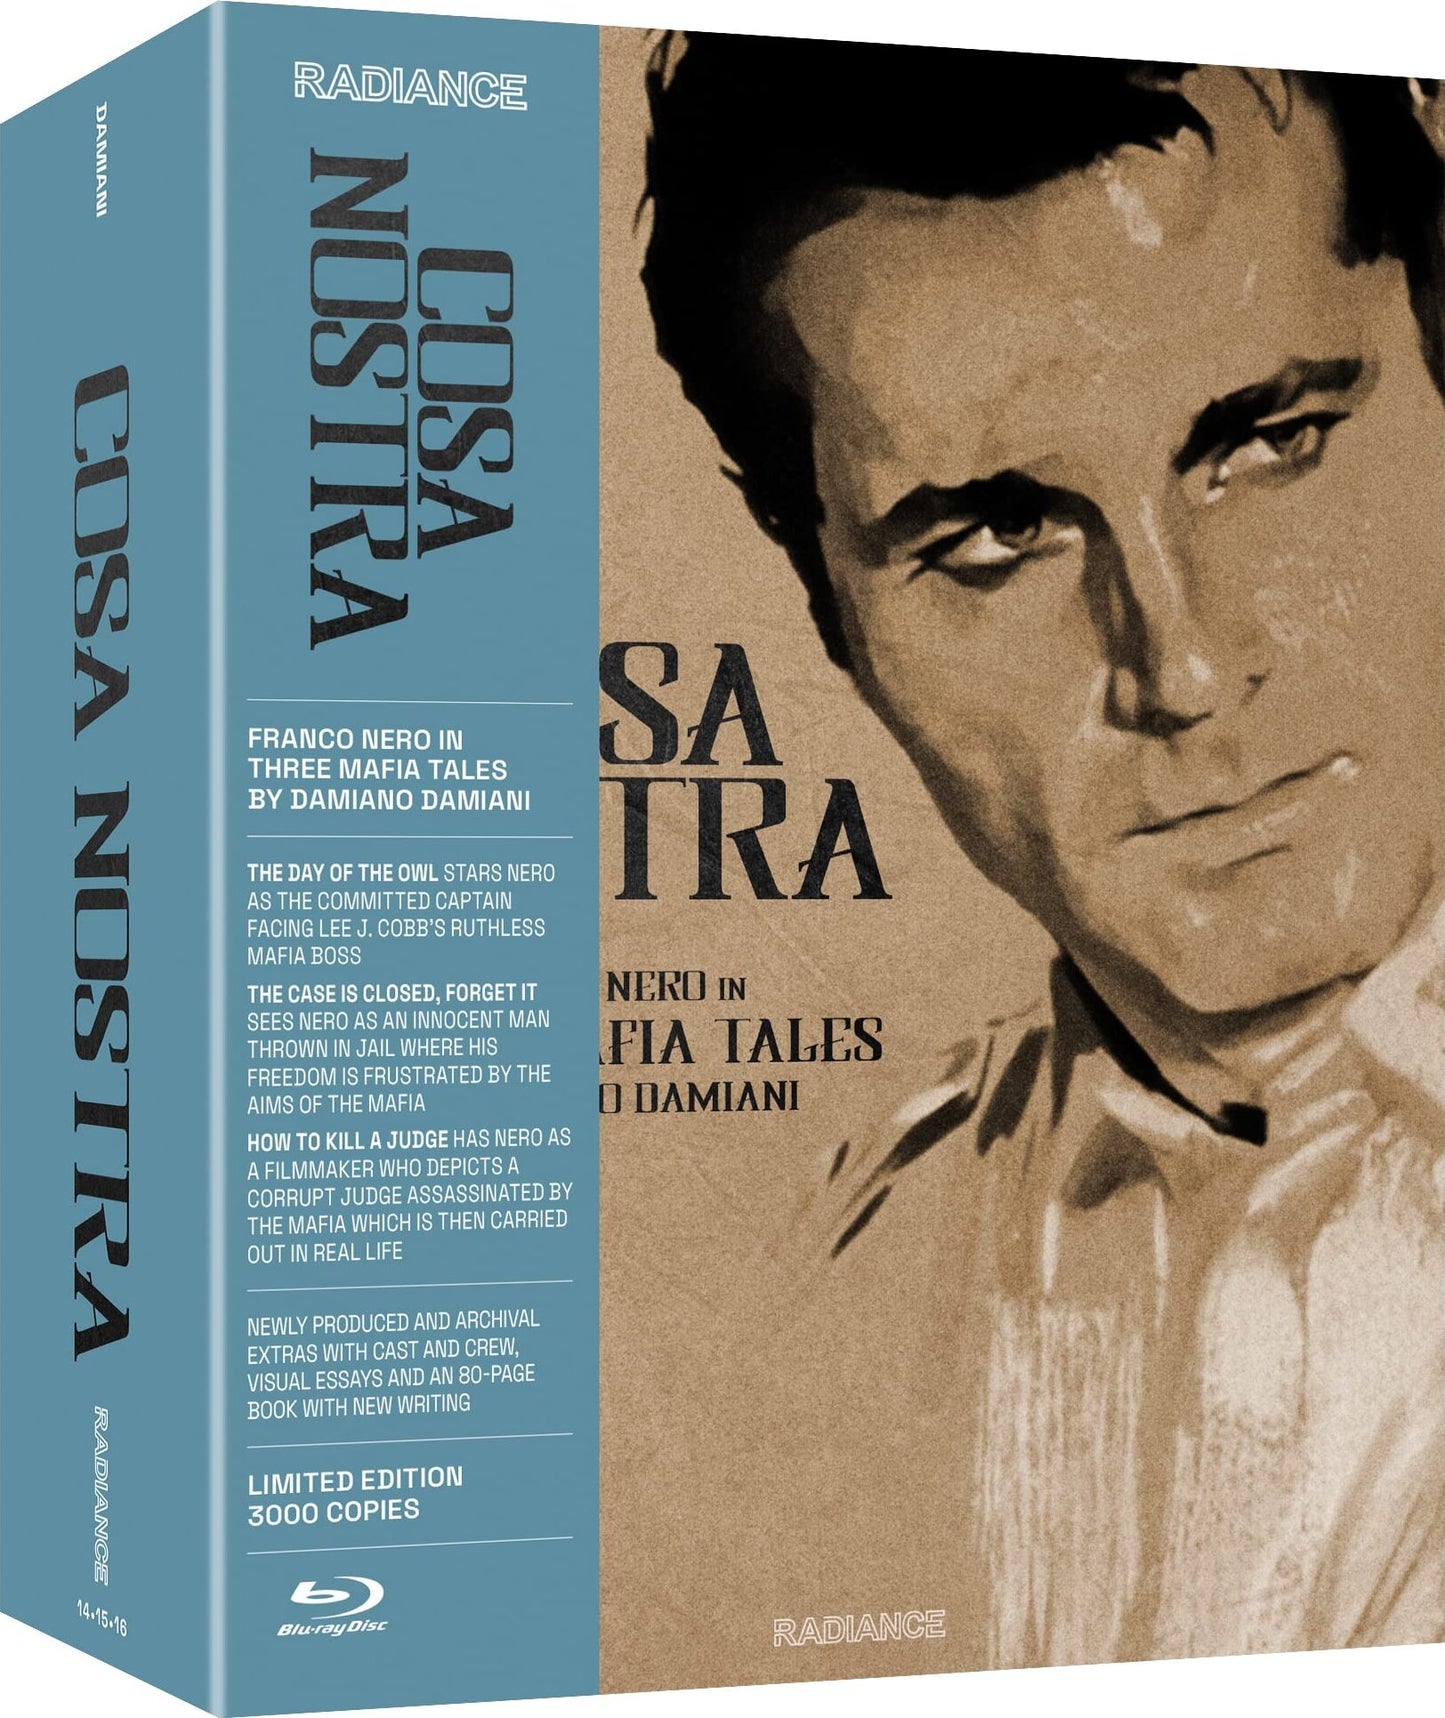 Cosa Nostra: Franco Nero in Three Mafia Tales by Damiano Damiani - Limited Edition